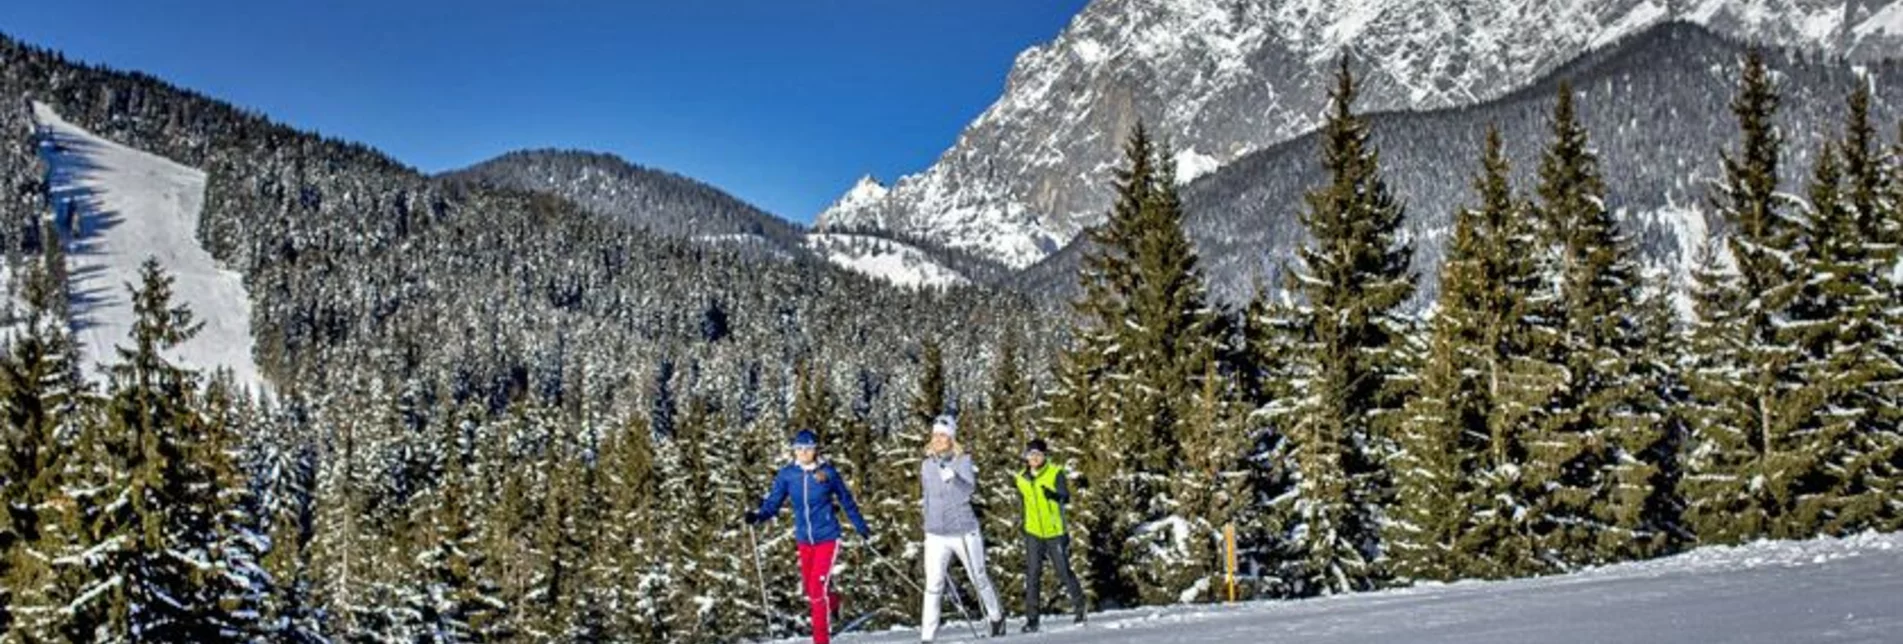 Cross-Country Skiing Halser Trail - Touren-Impression #1 | © Erlebnisregion Schladming-Dachstein